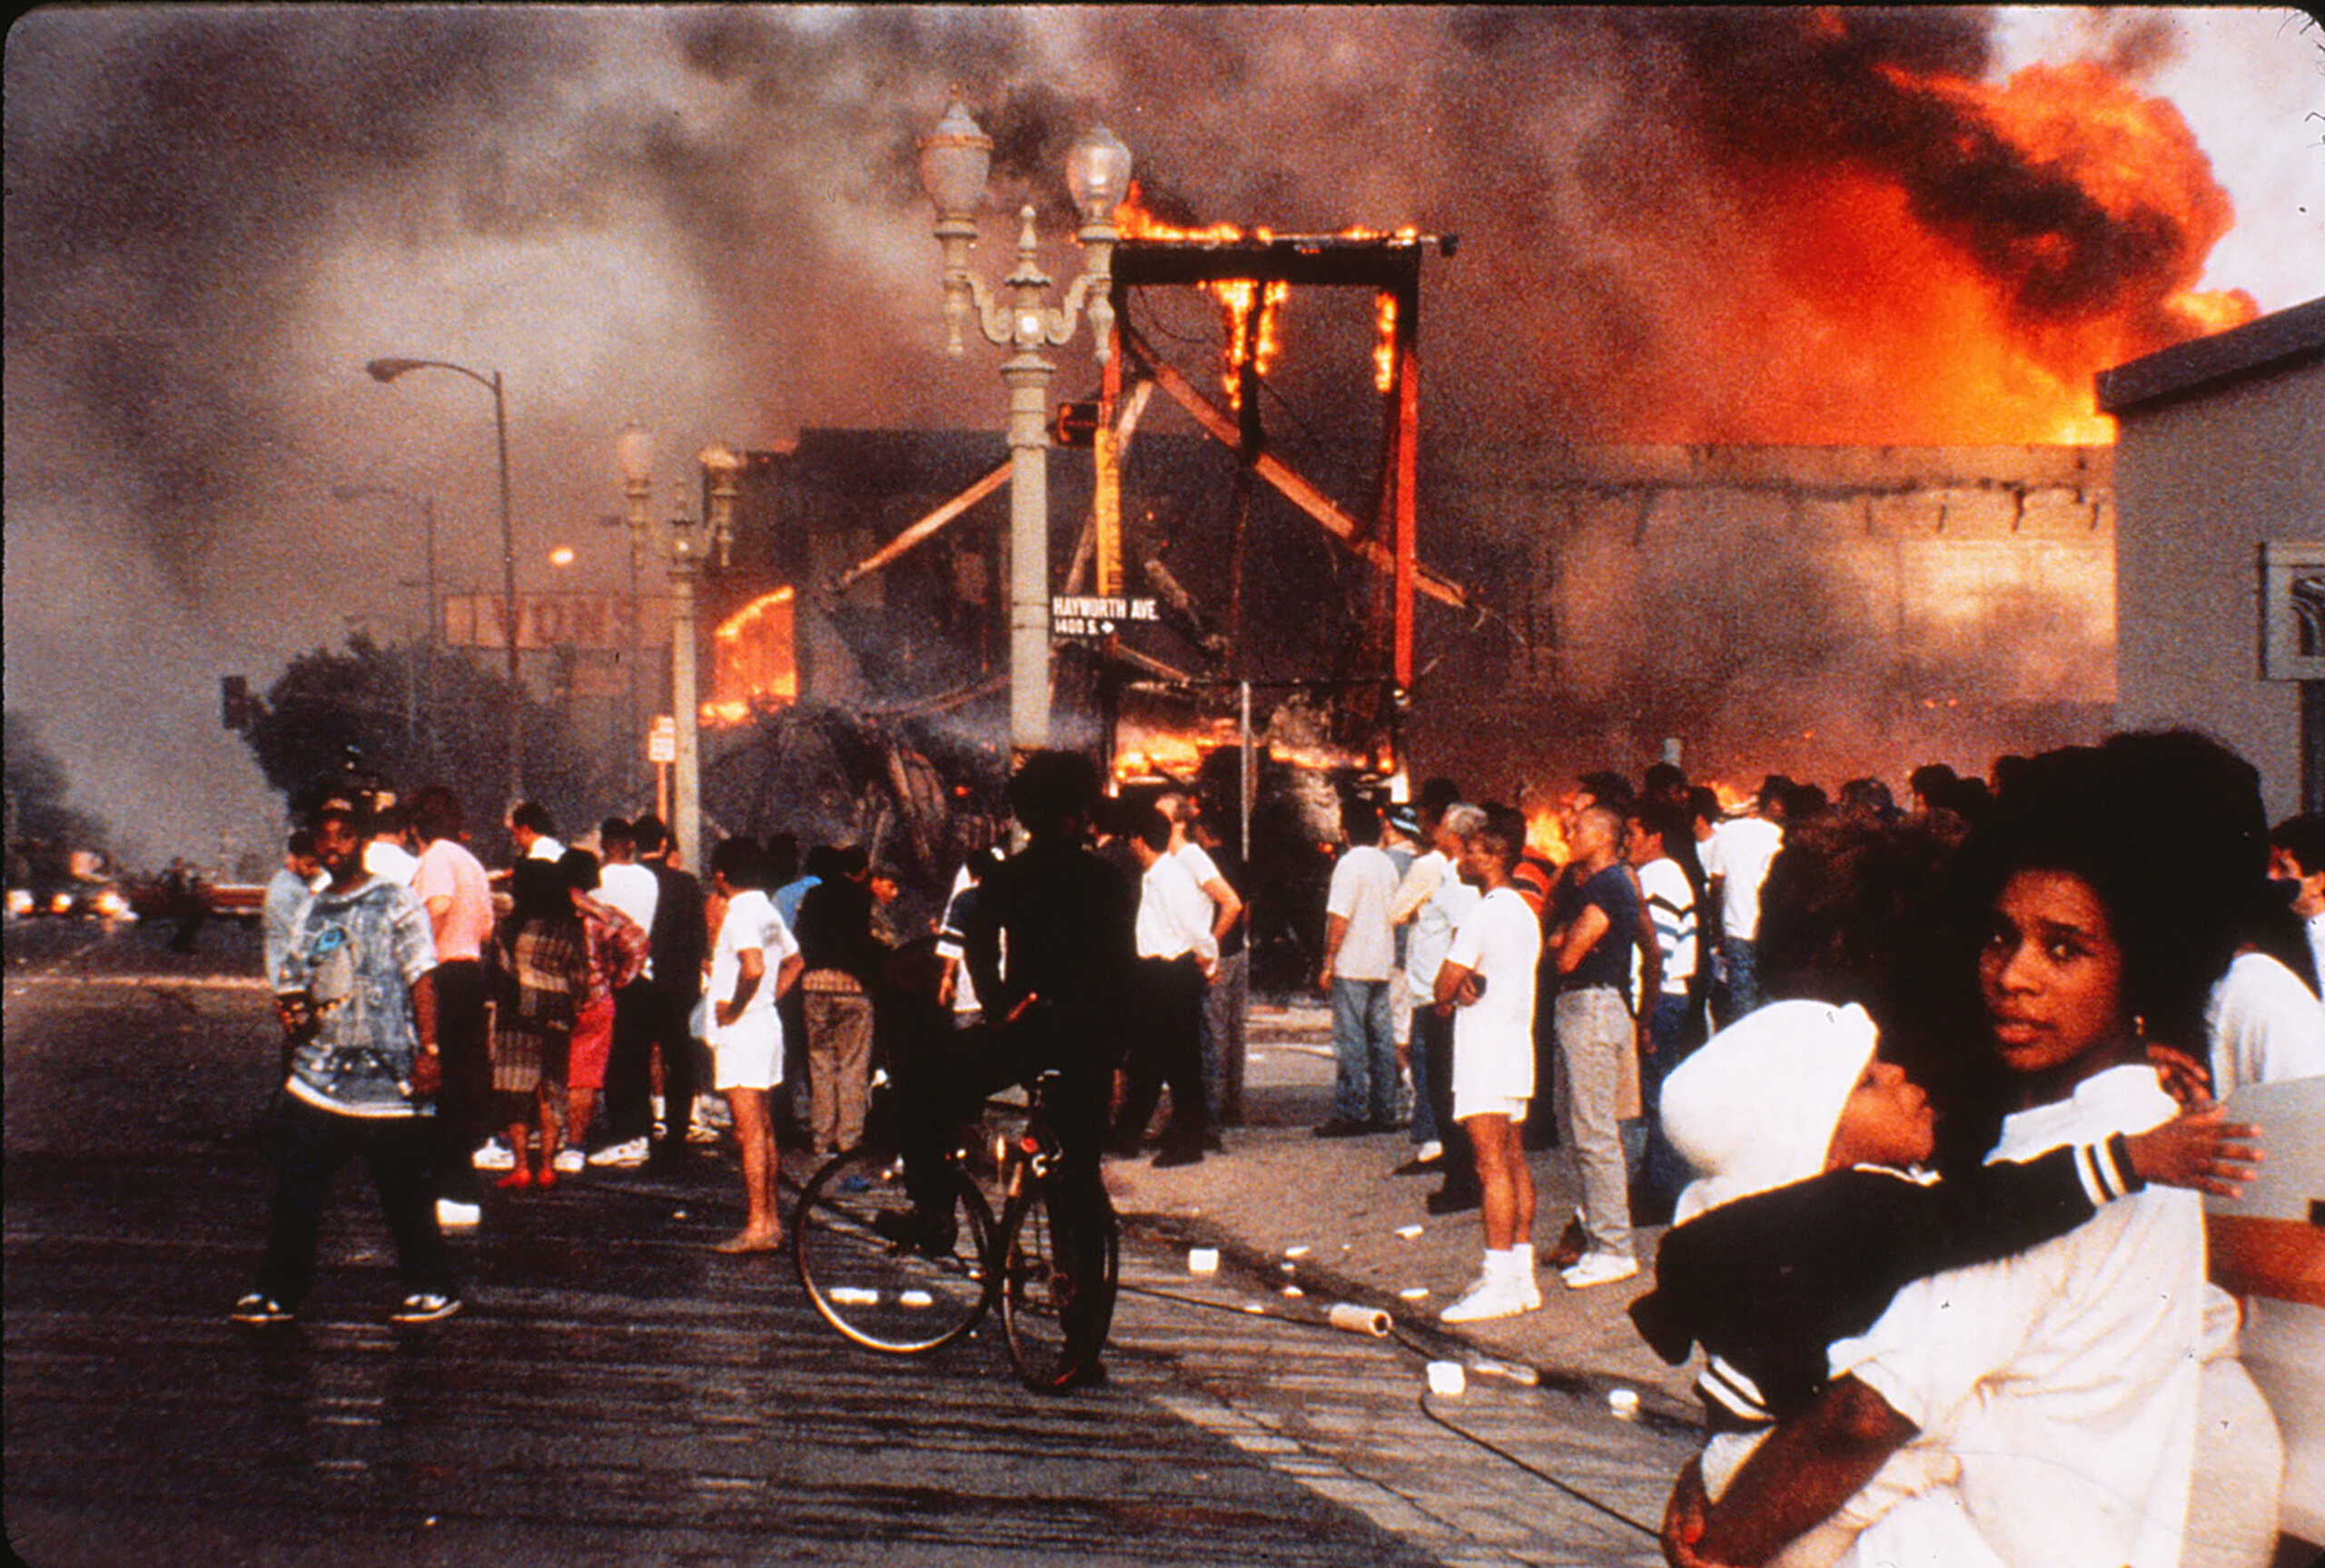 Ρόντνεϊ Κινγκ: Ο άγριος ξυλοδαρμός του από αστυνομικούς το 1991 προκάλεσε την εξέγερση του Λος Άντζελες